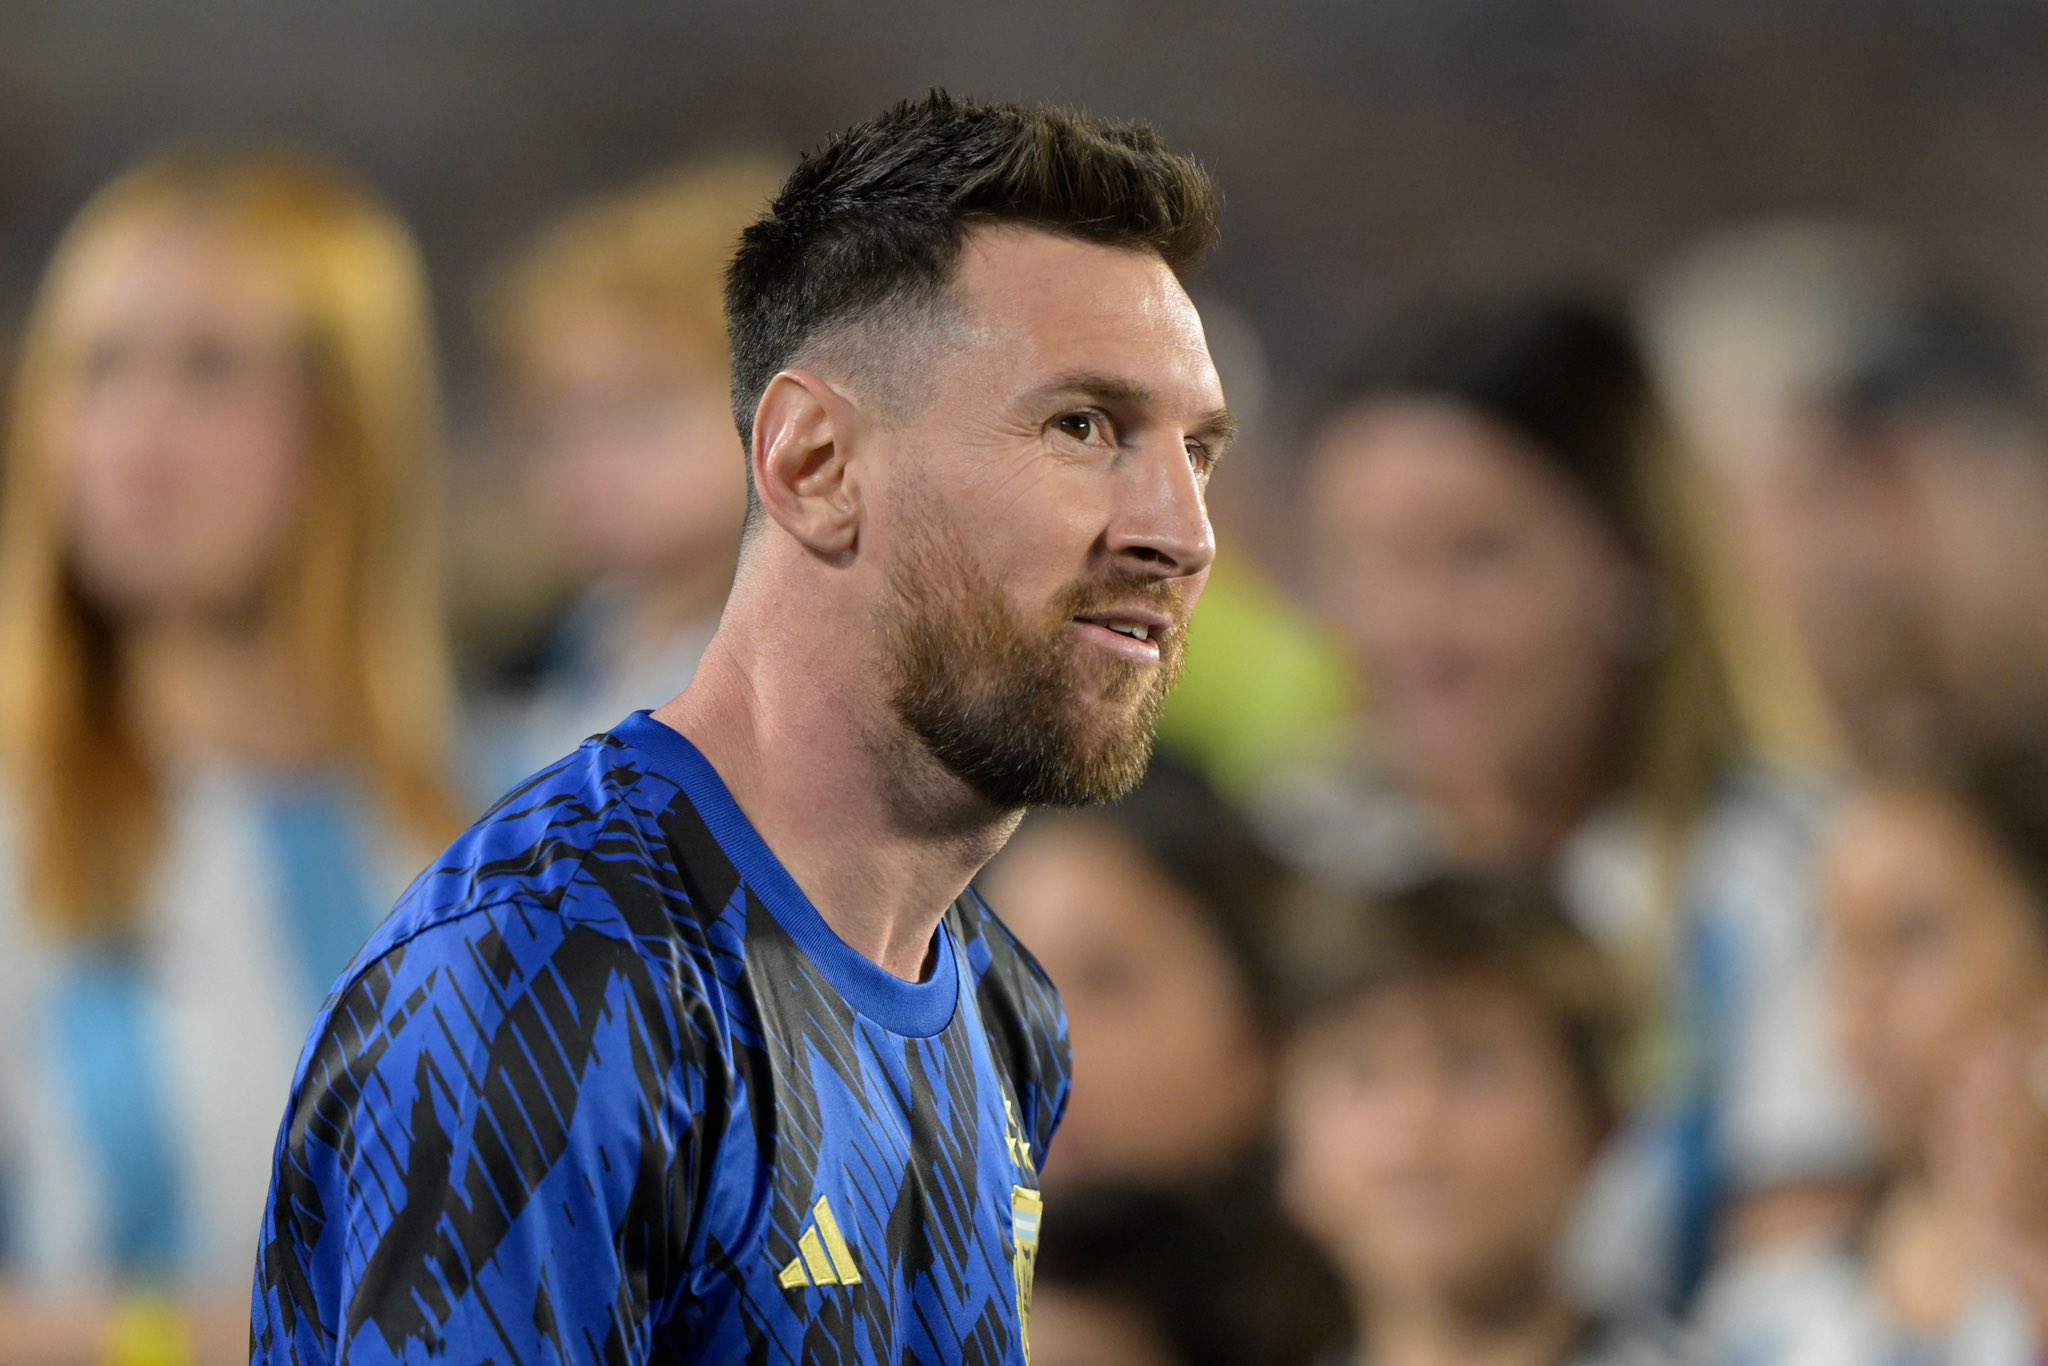 Messi chuẩn bị ký hợp đồng với Inter Miami sau khi Barcelona không đạt được thỏa thuận đưa anh về nhà, kết thúc Câu chuyện chuyển nhượng Lionel Messi